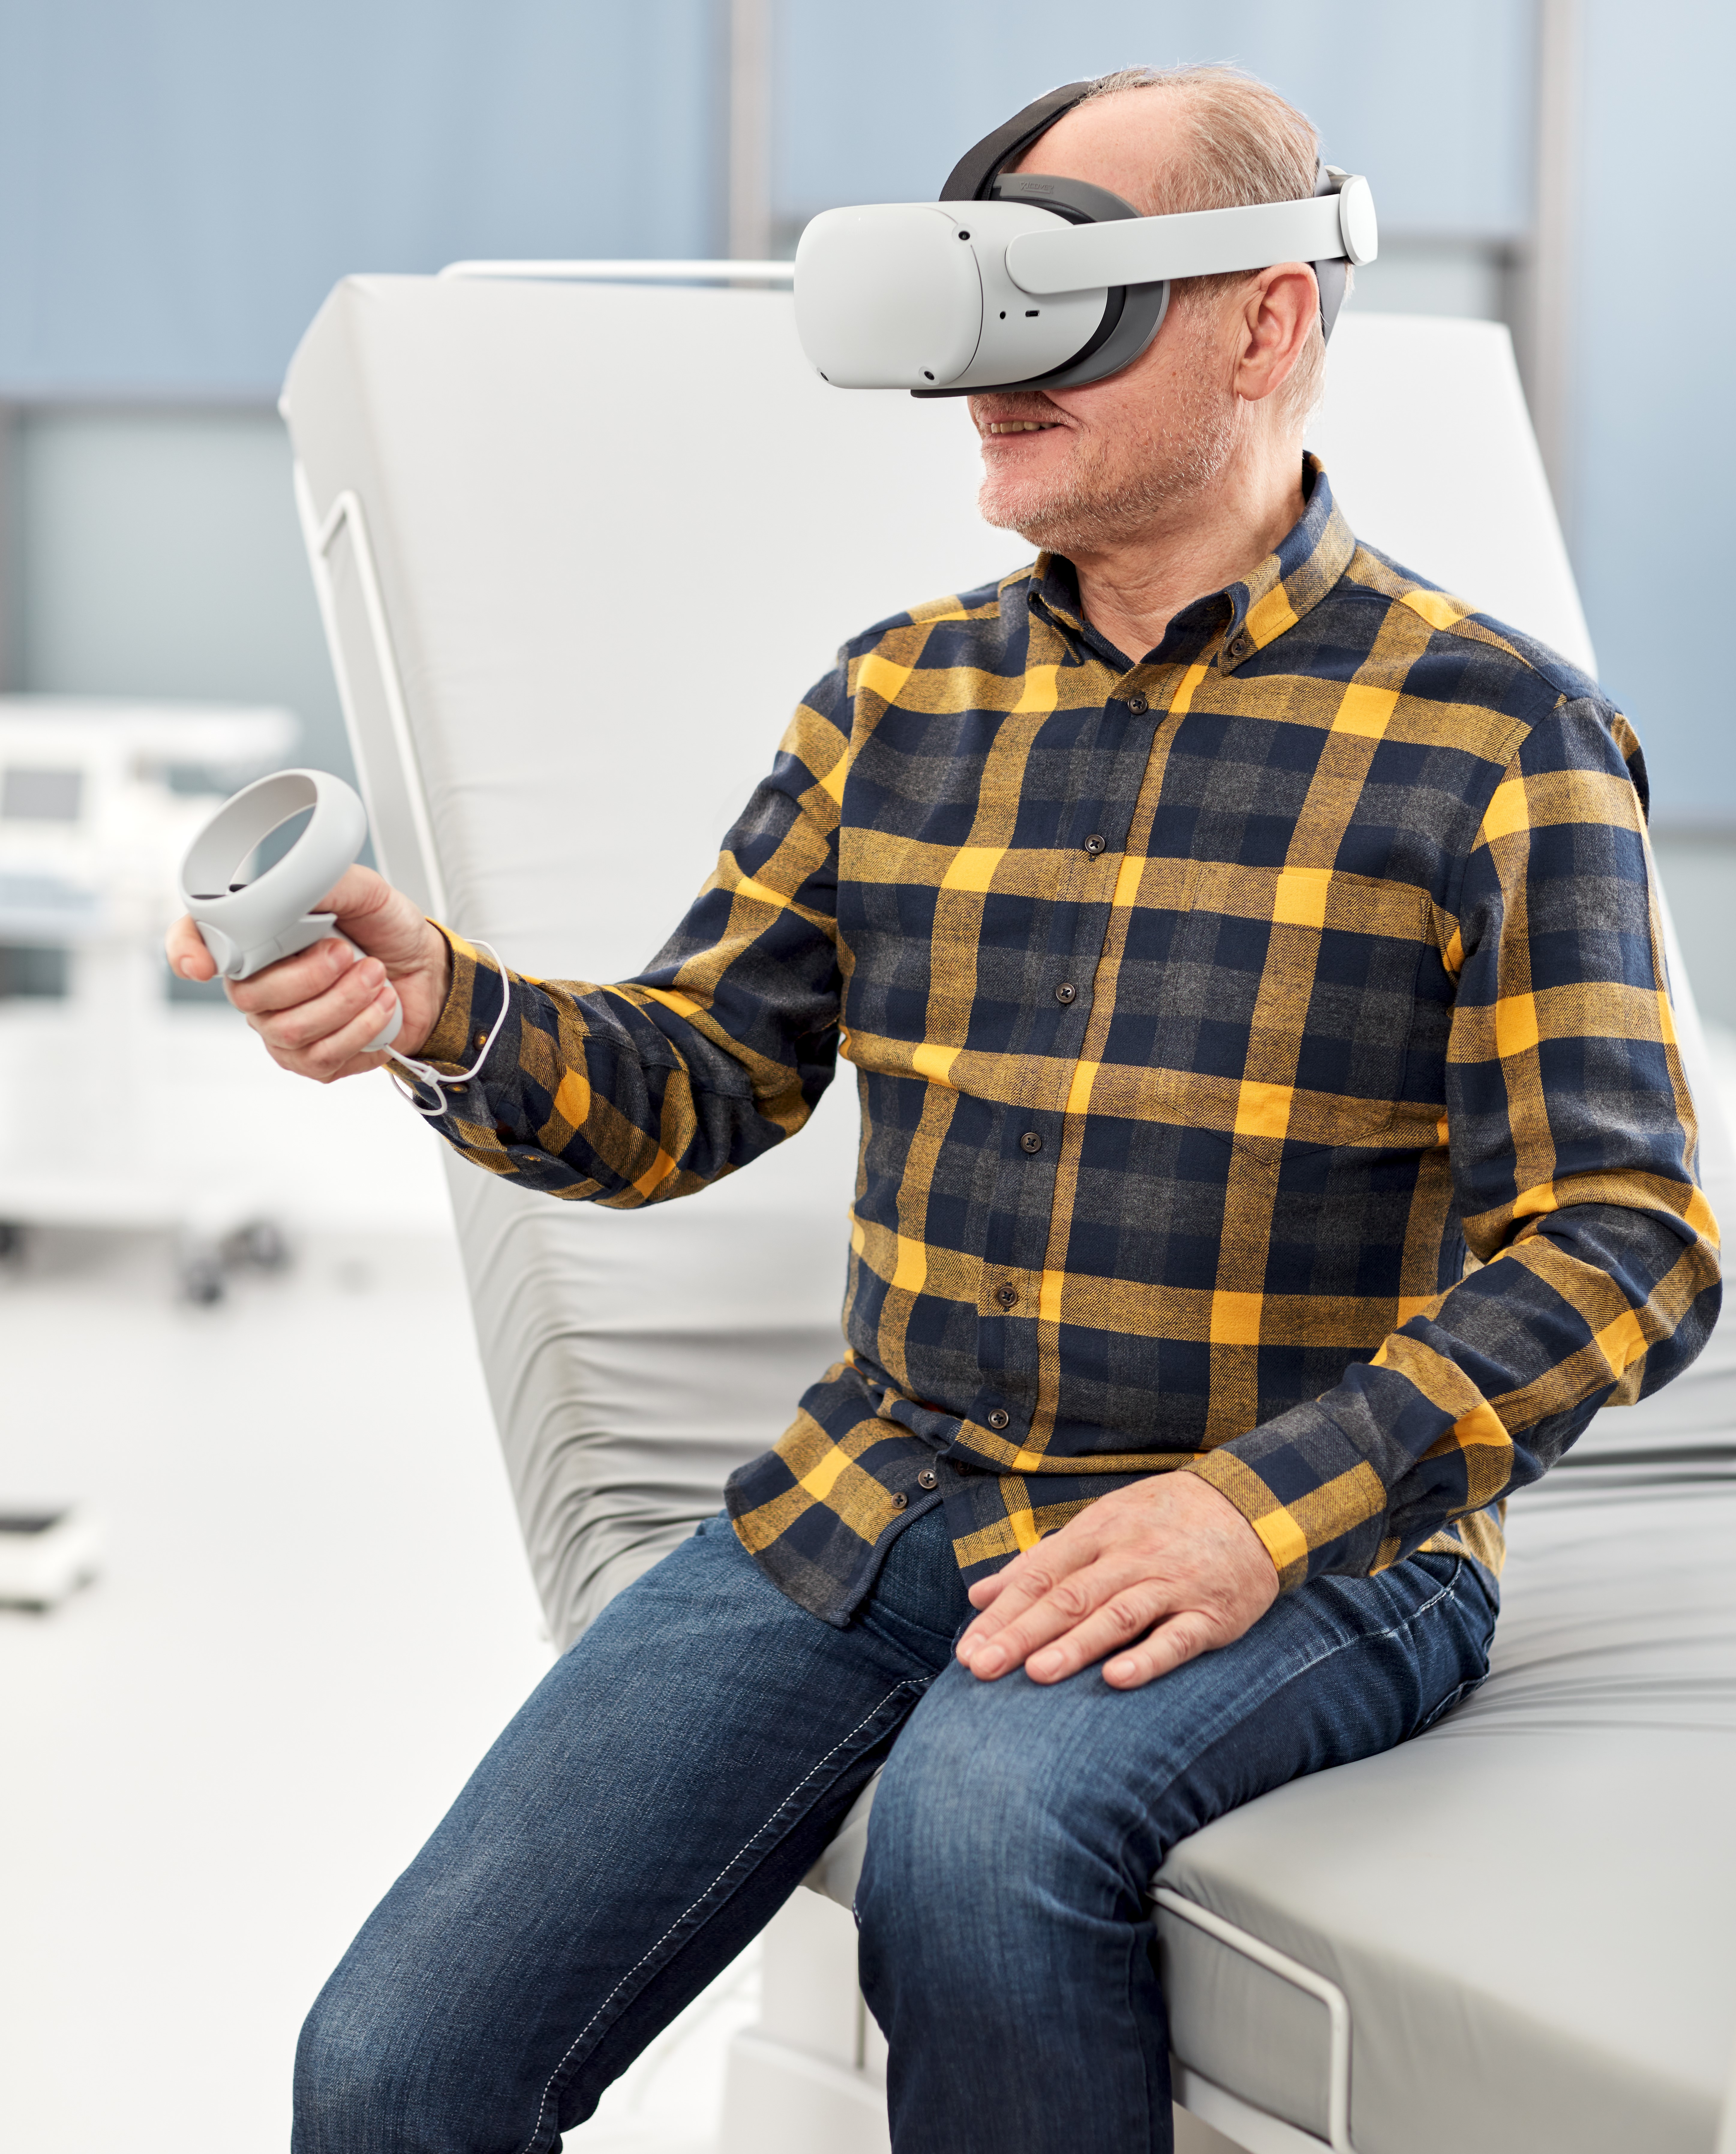 Paciente recibiendo formación con realidad virtual en hospital